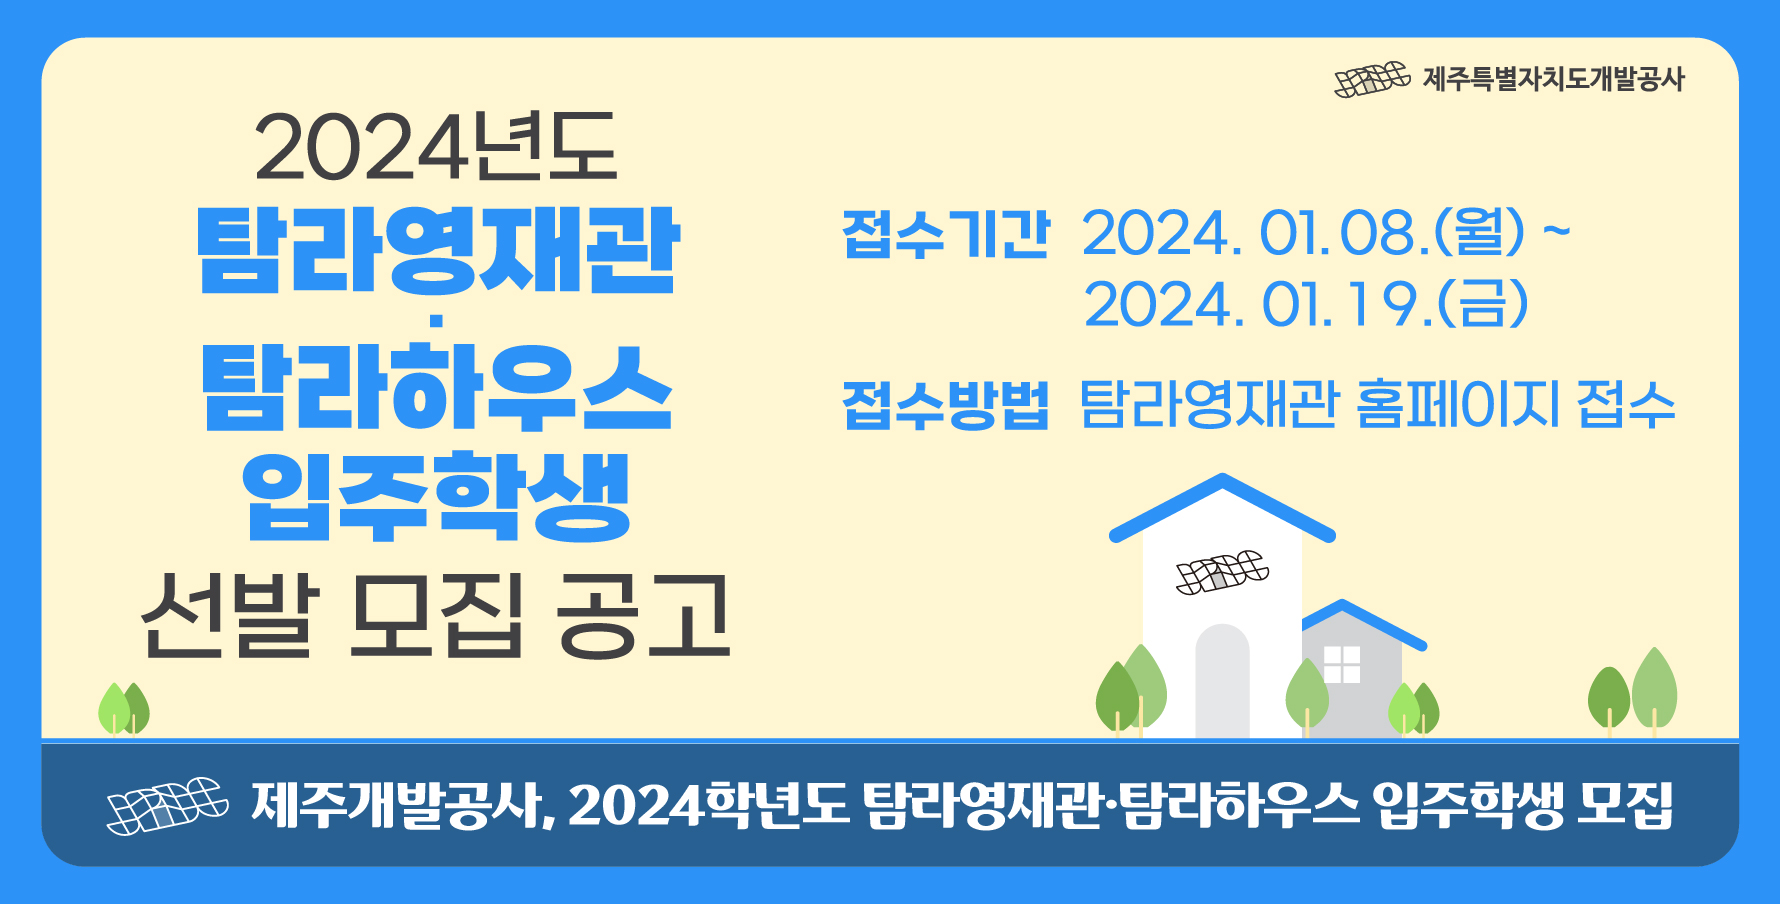 2024학년도 탐라영재관ㆍ탐라하우스 입주학생 모집